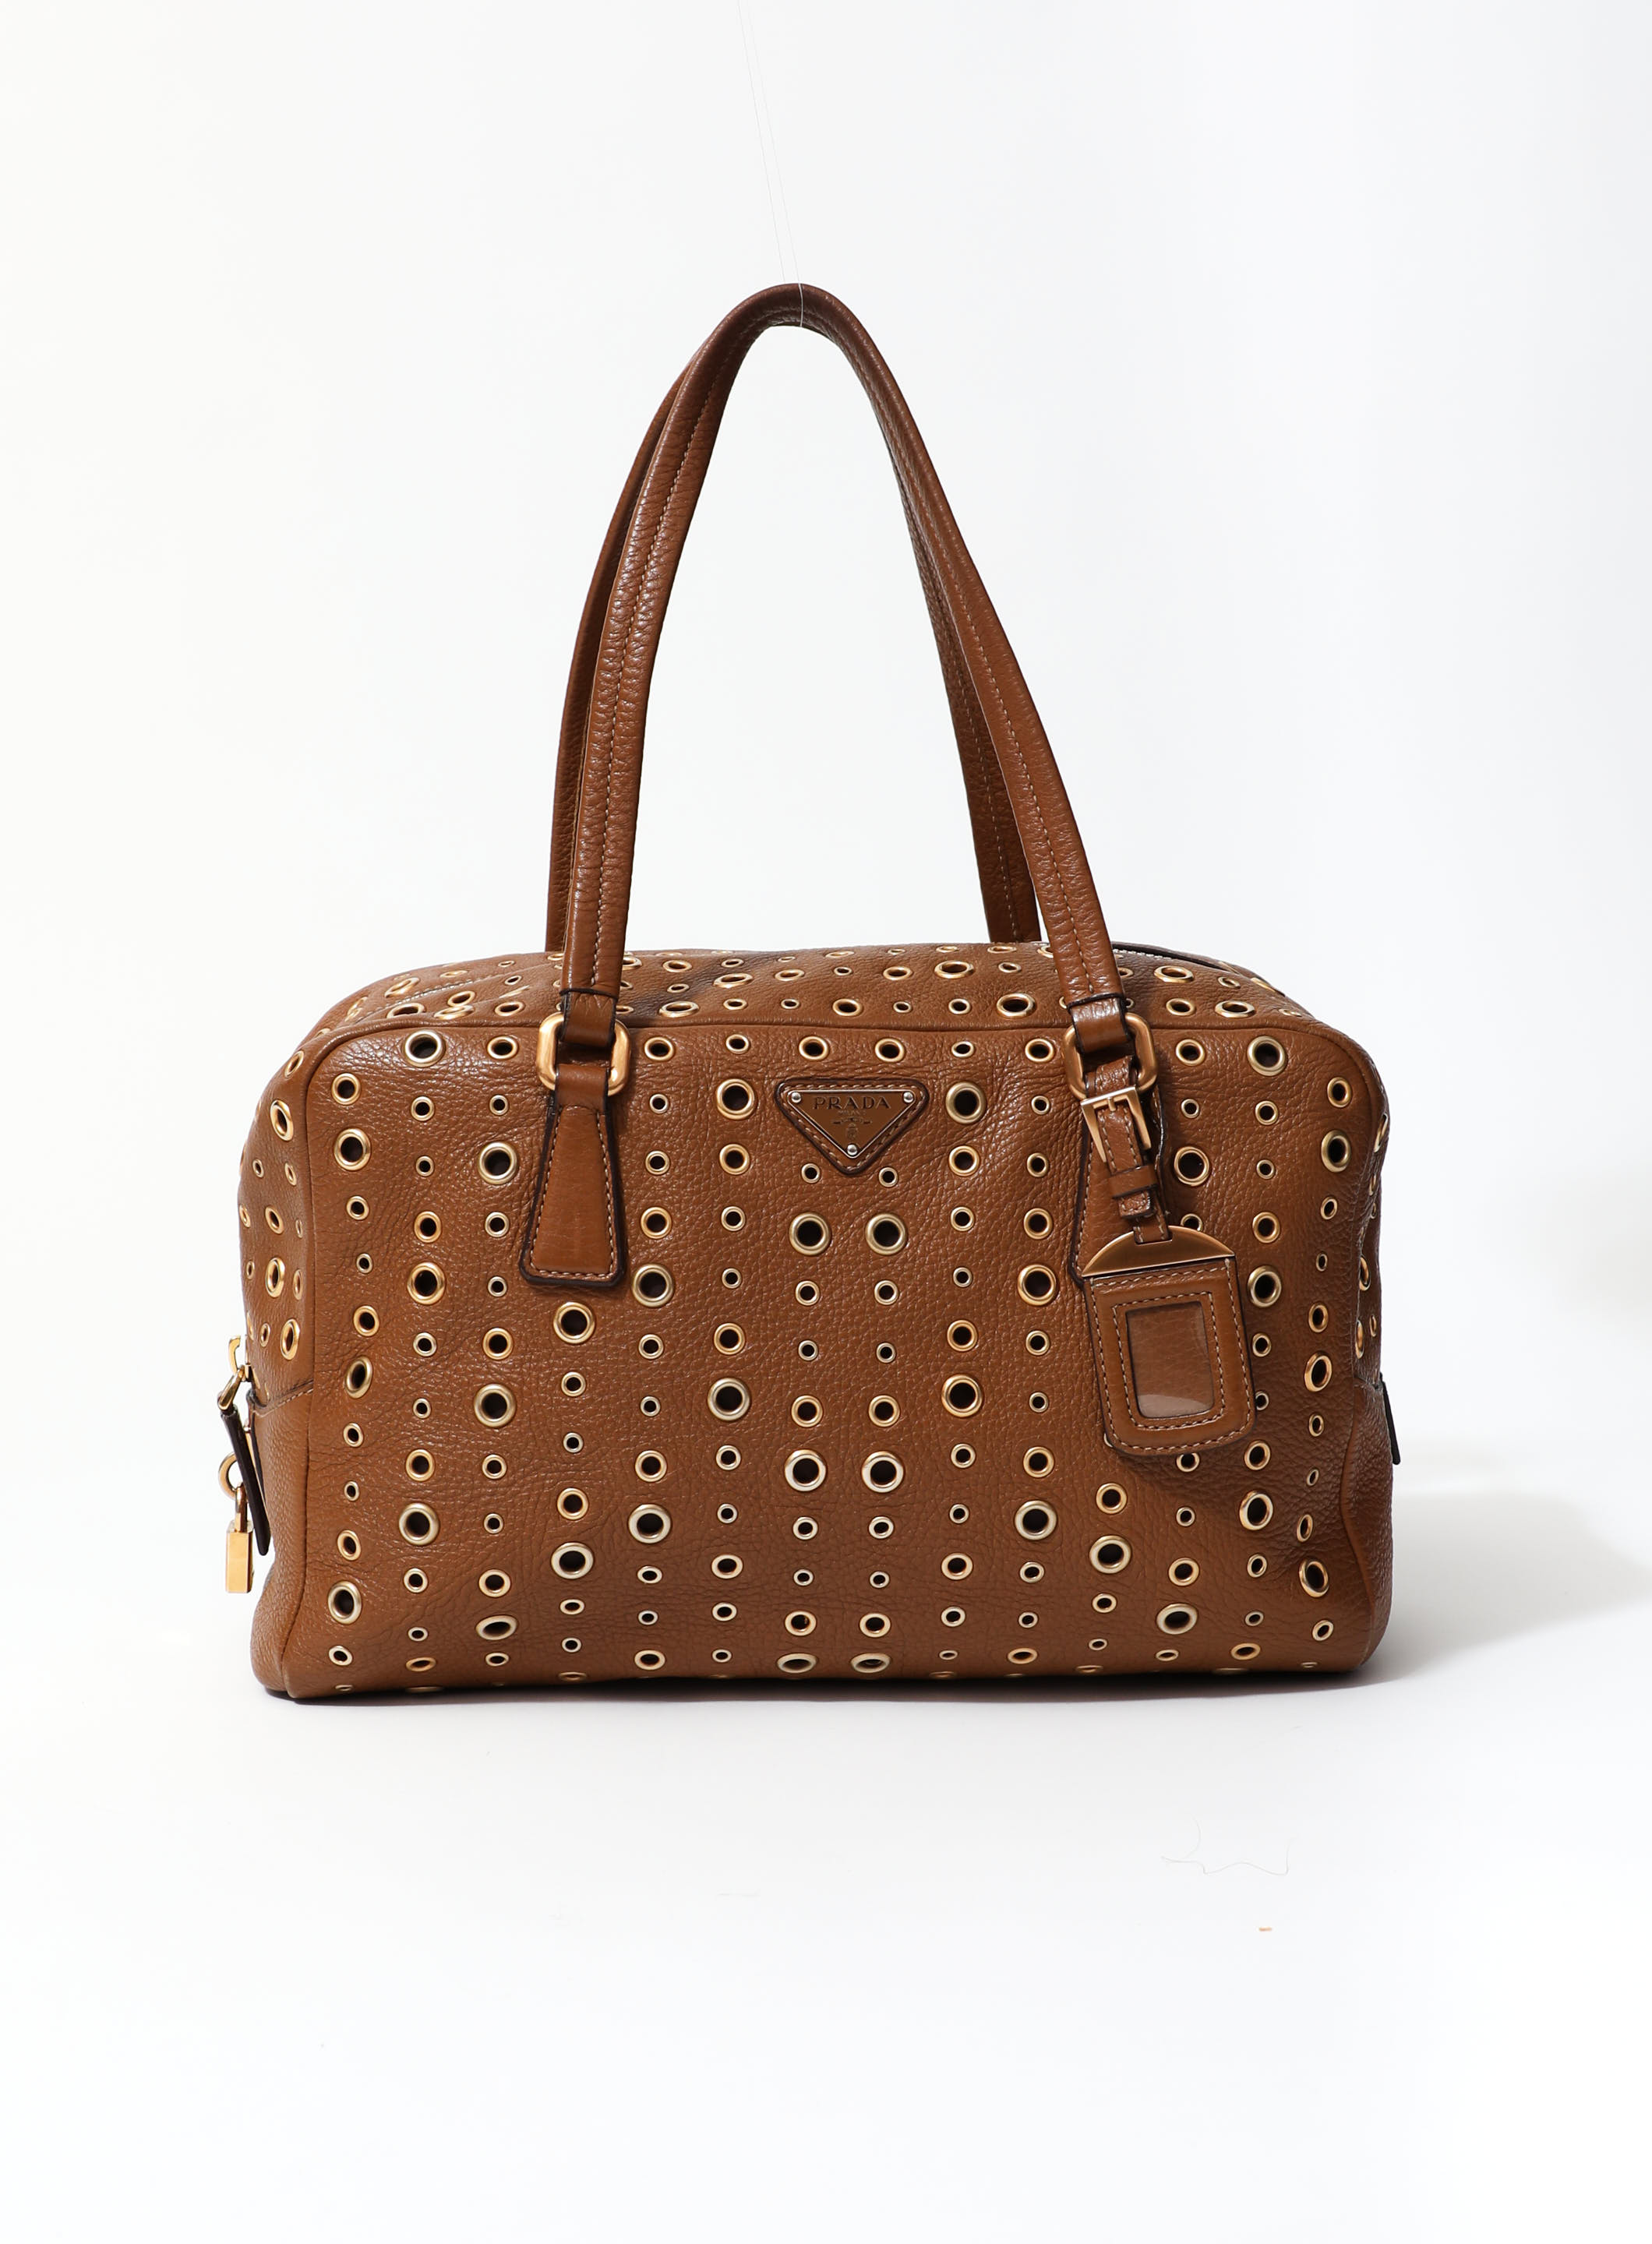 Prada Handbag Light Brown Leather Shoulder Bag -  Israel